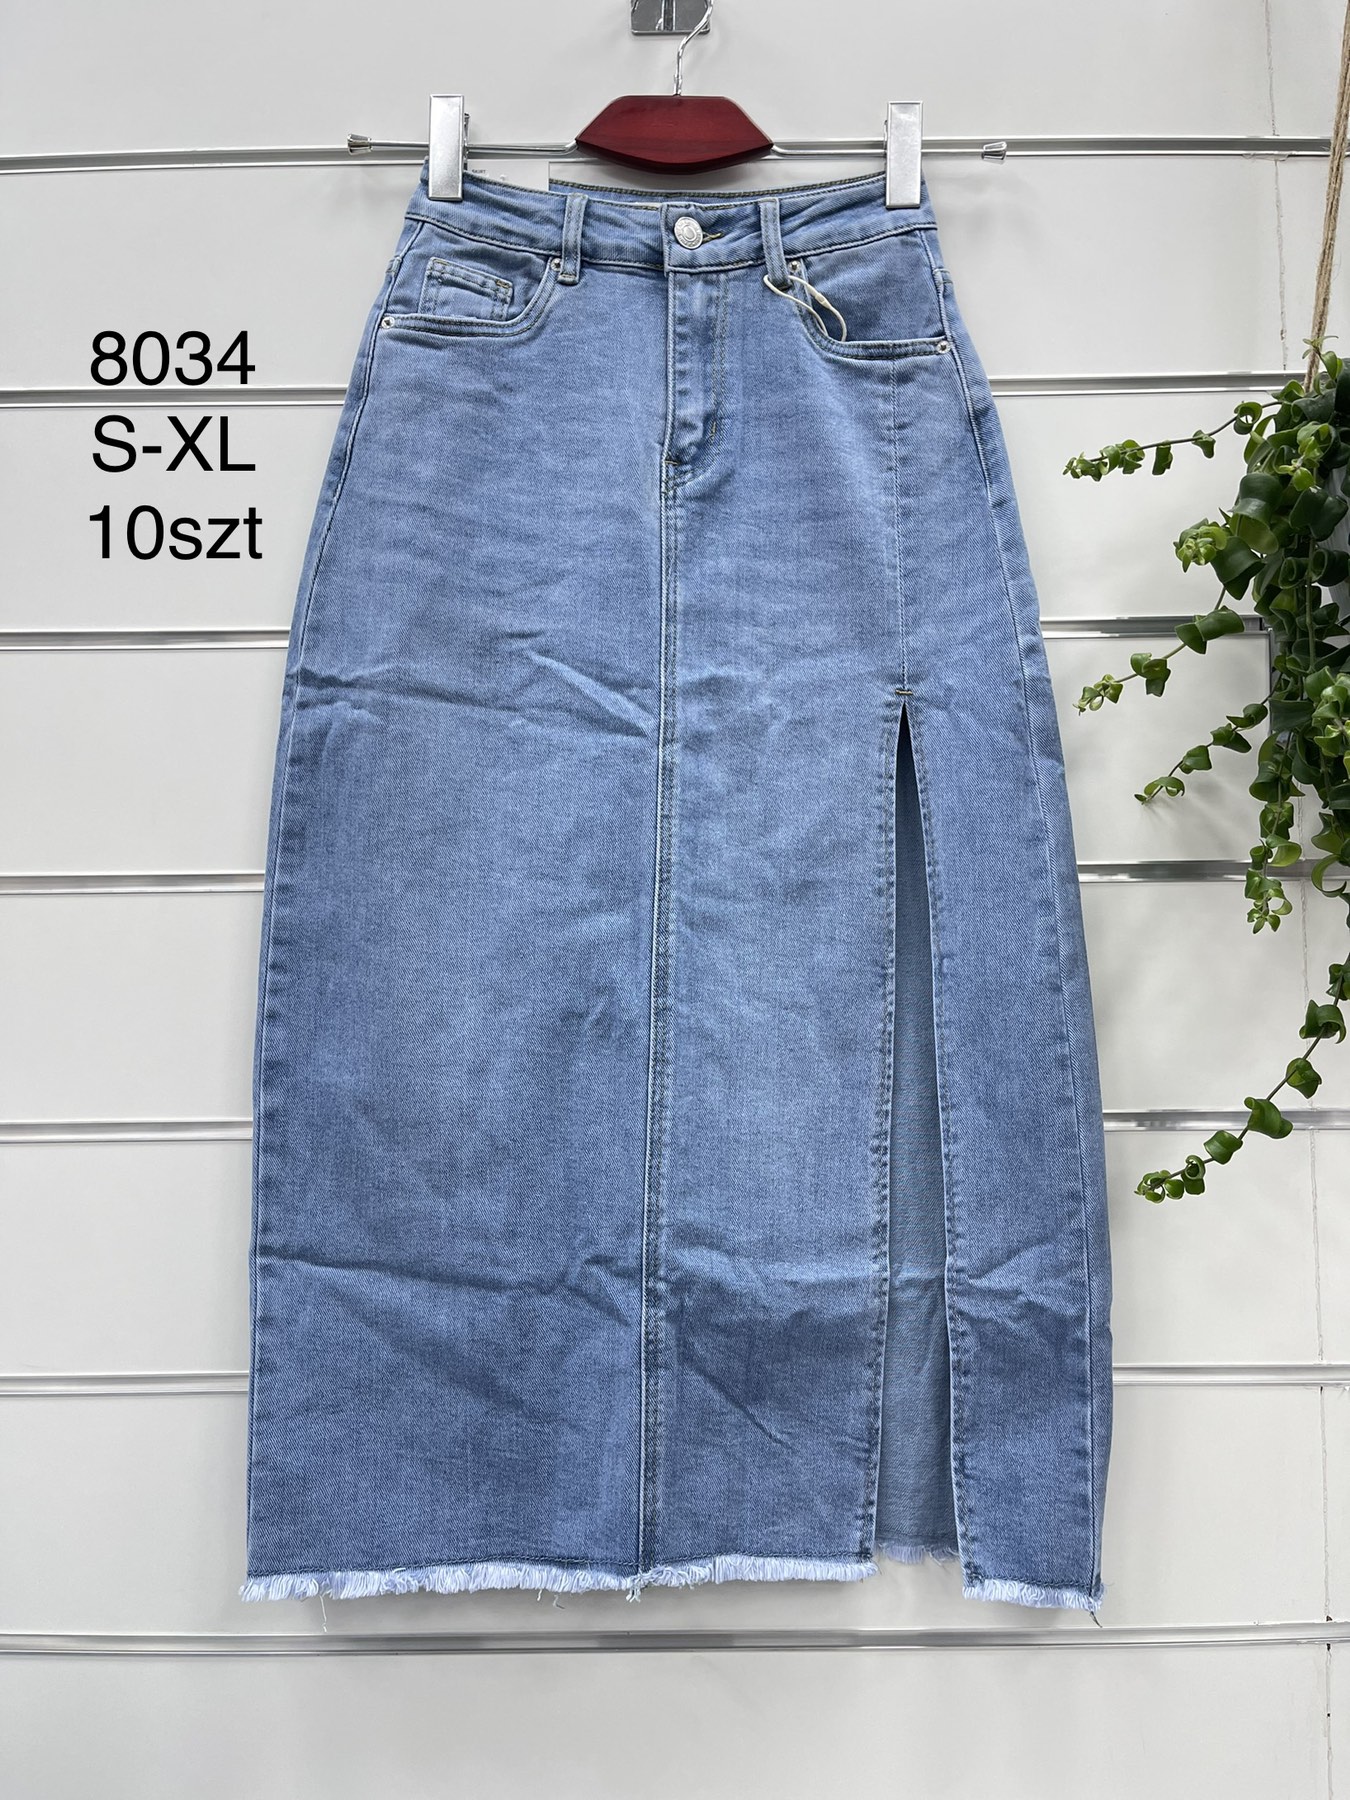 Spódnica  damskie jeans   Roz  S-XL  1 kolor . Paczka 12szt